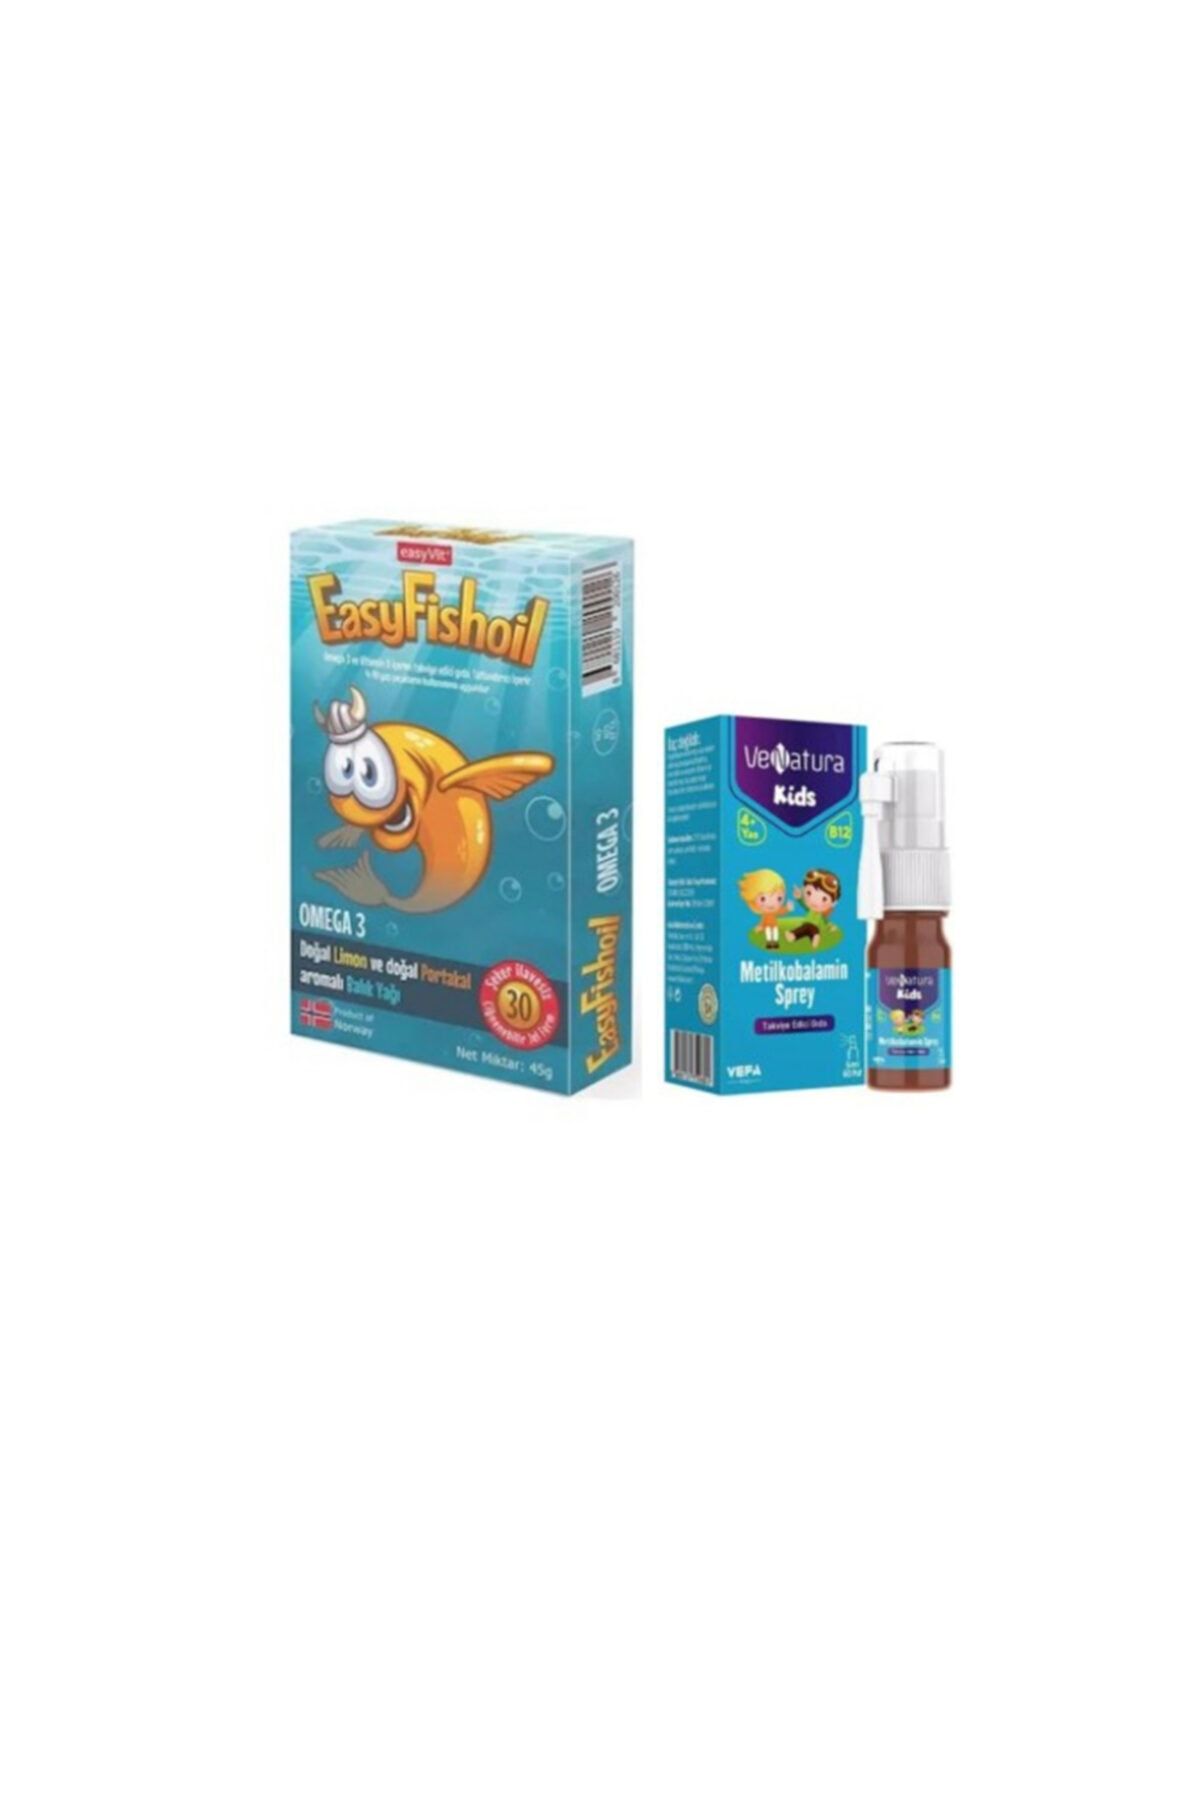 Easy Fishoil Çocuklar Için Set- Omega 3 Balık Yağı 30 Çiğnenebilir Jel Form + Venatura B12 Vitamini 5 Ml Sprey